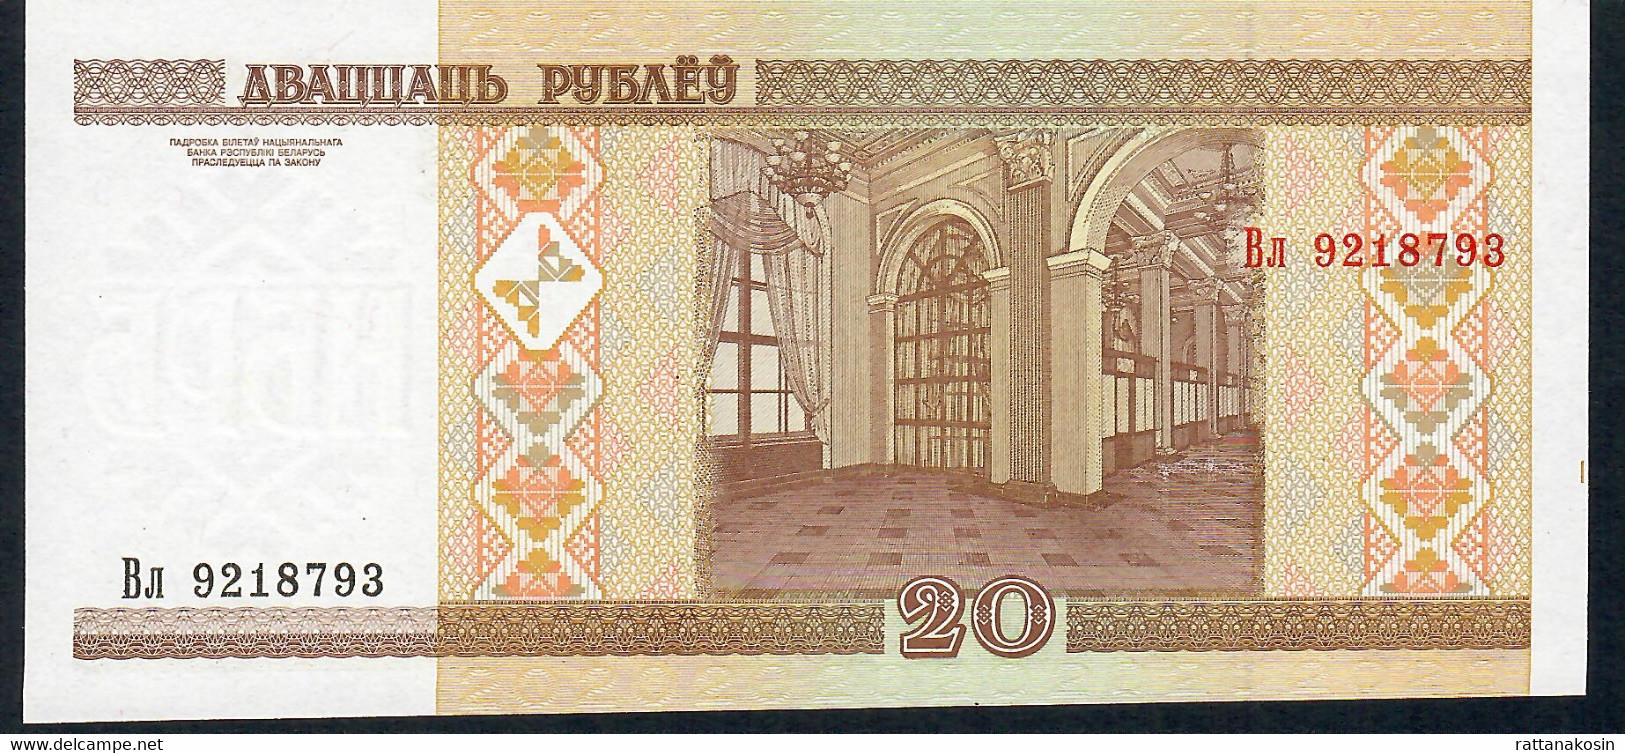 BELARUS   P24  20  RUBLES   2000    UNC. - Wit-Rusland